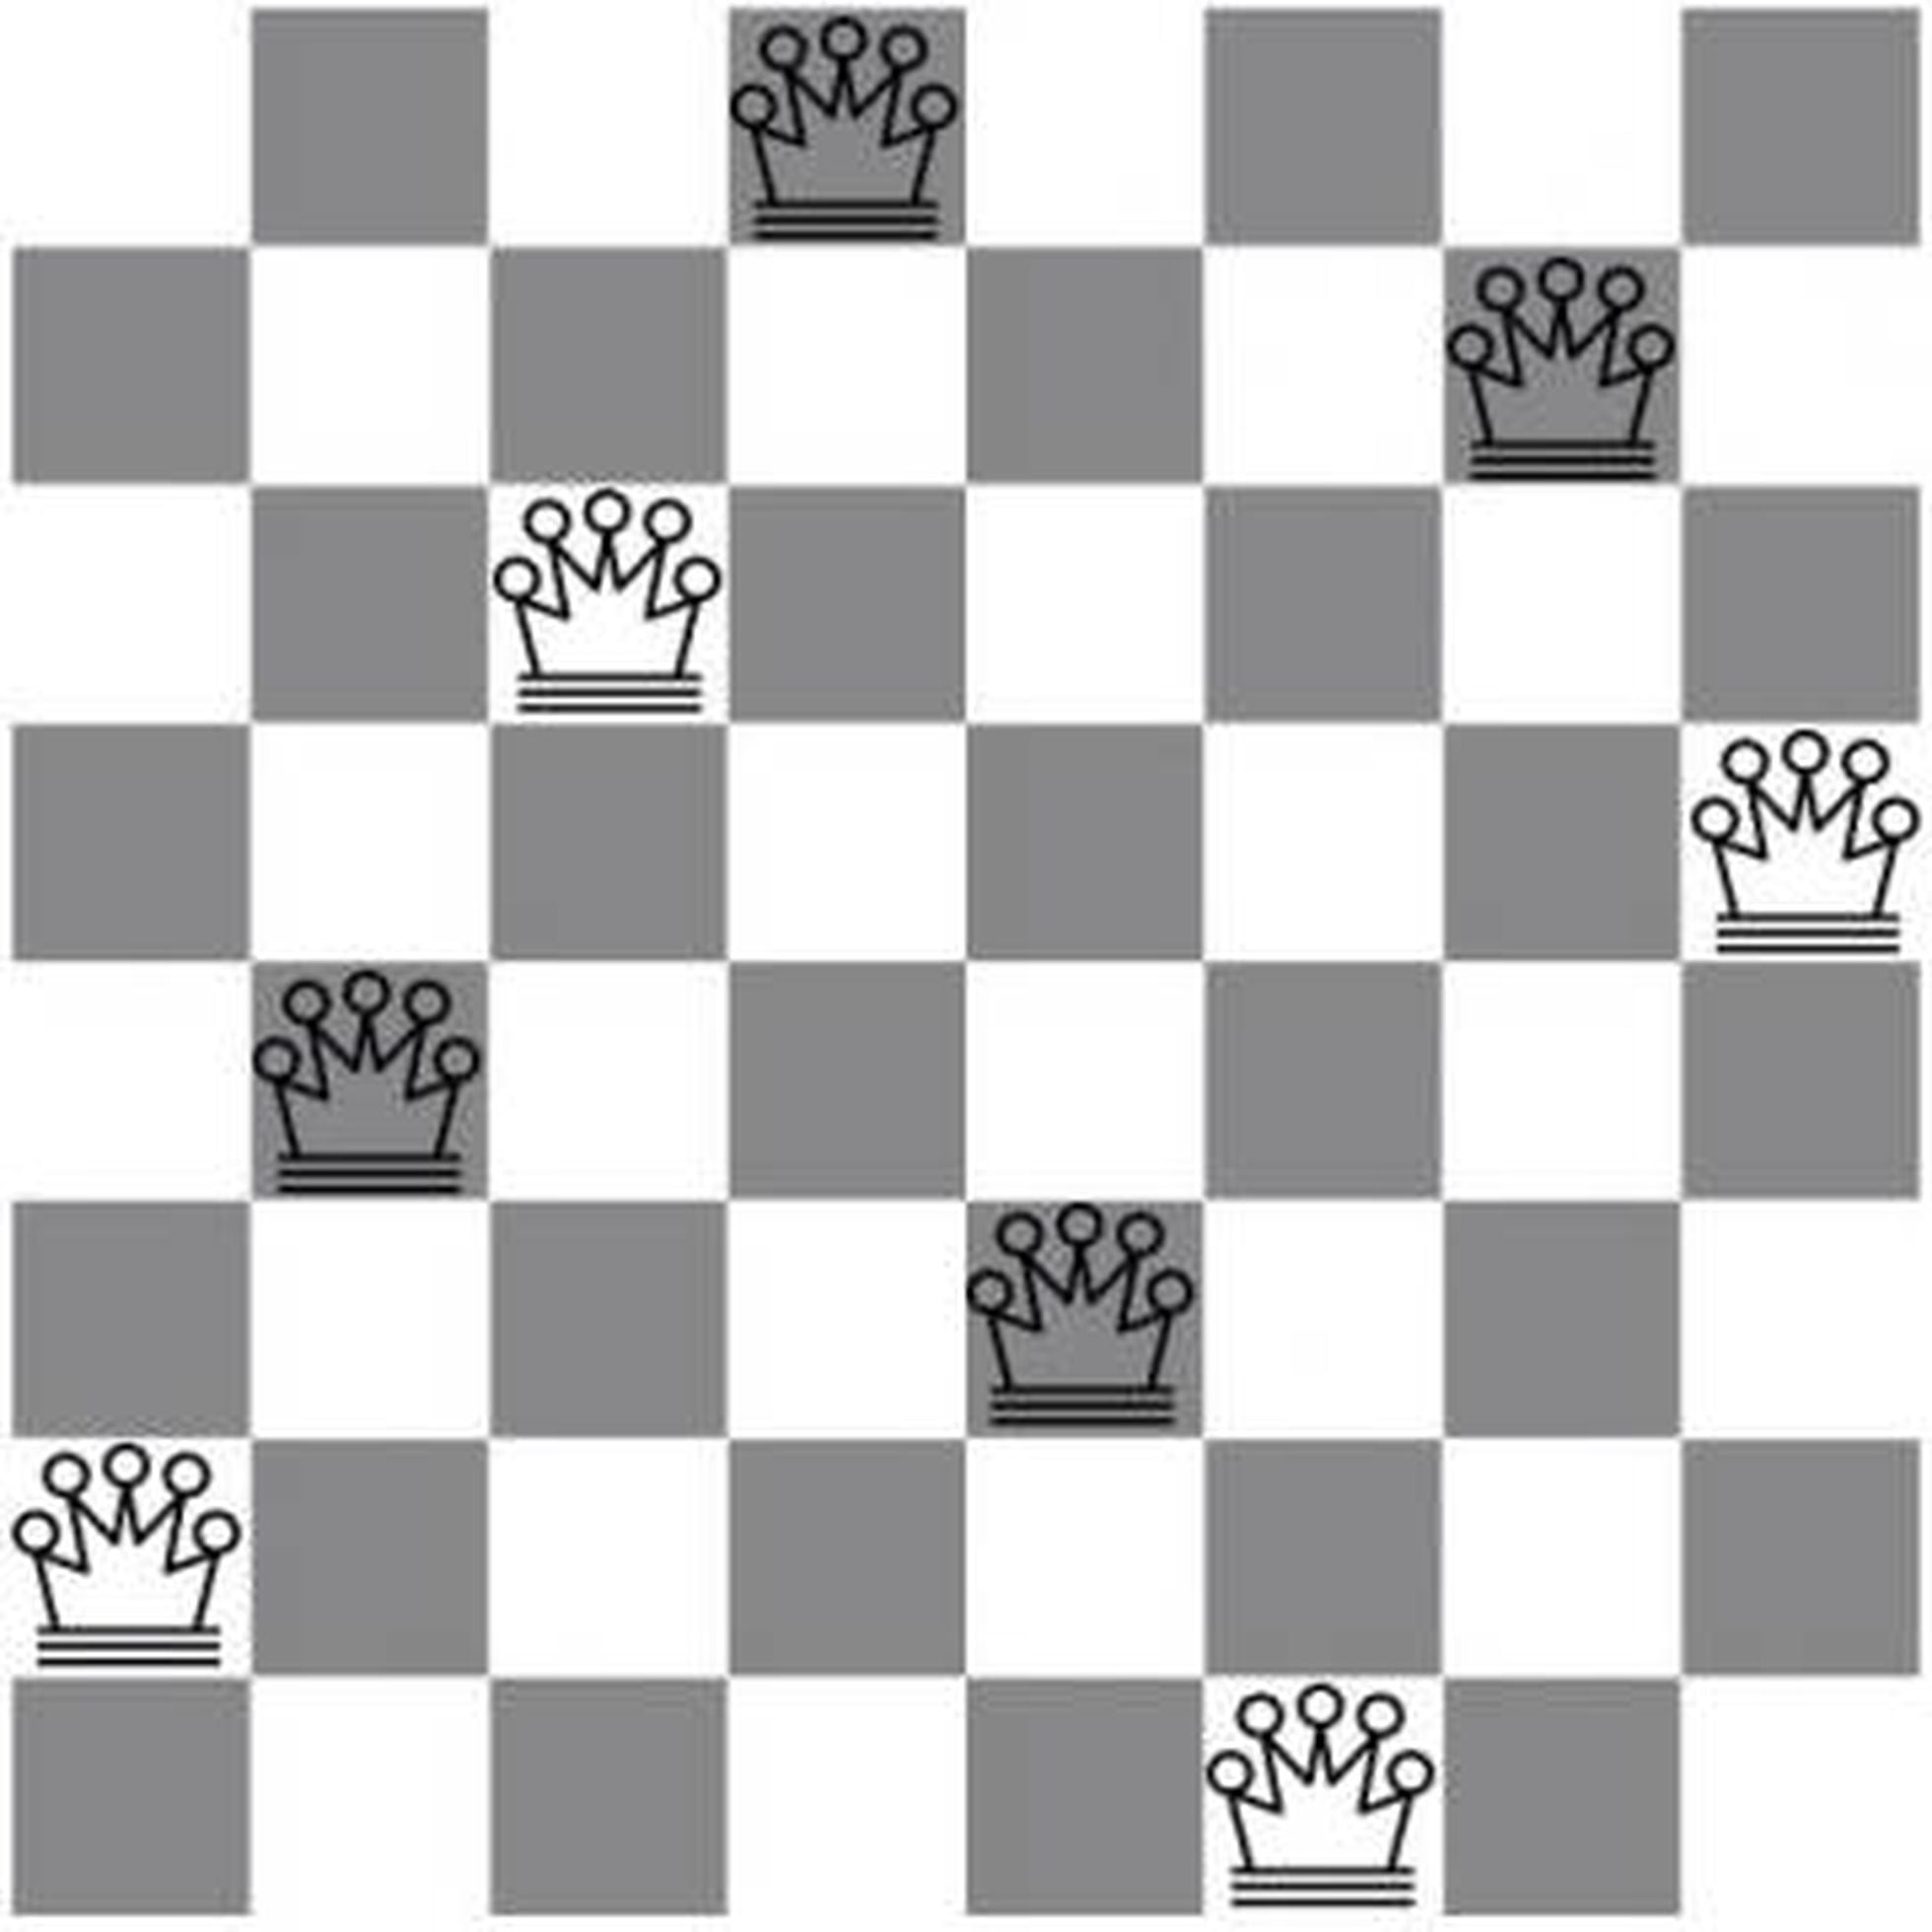 Xadrez: Uma Questão Matemática